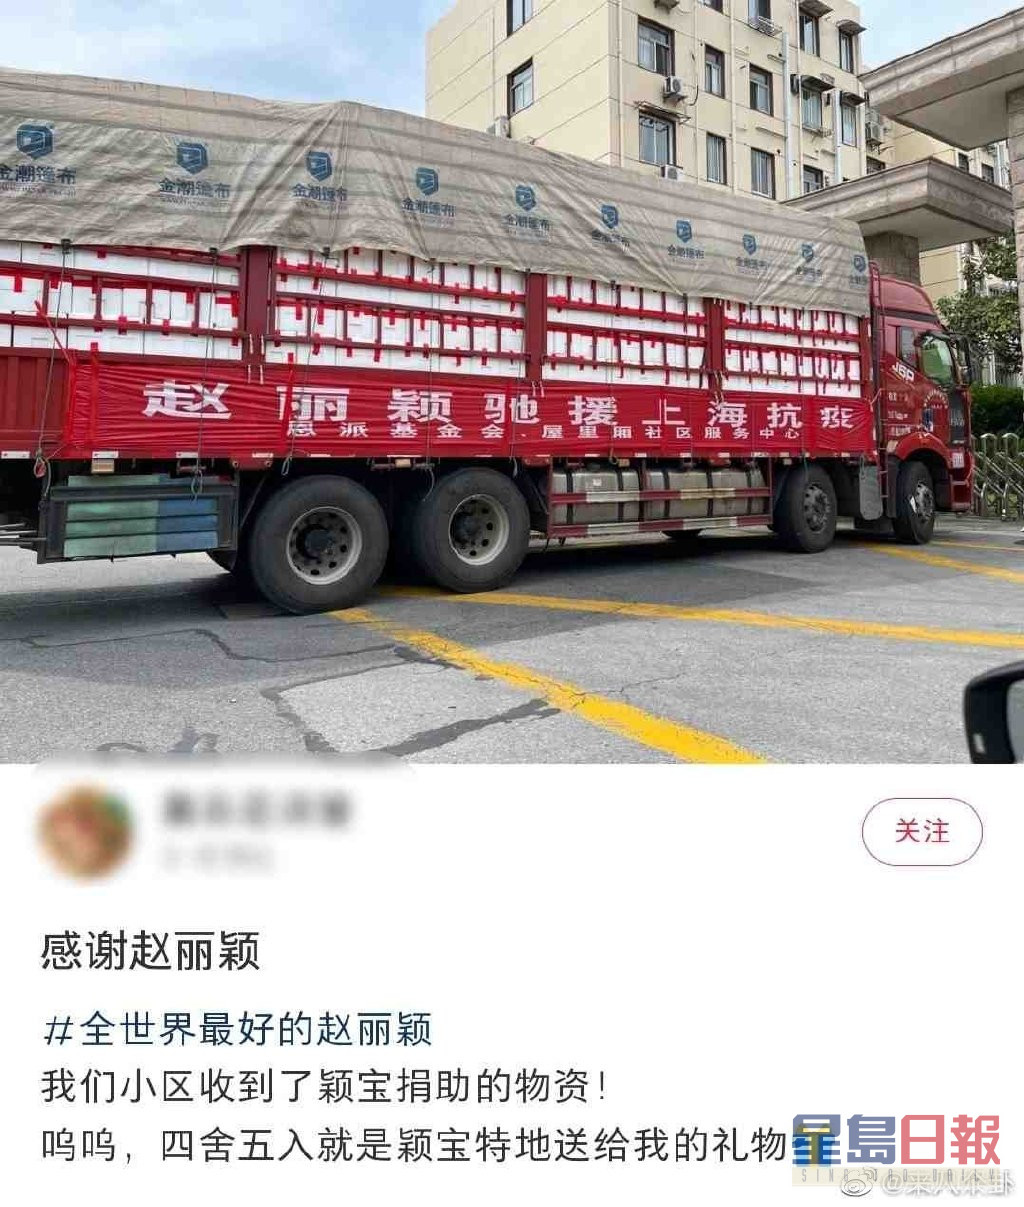 有上海民众于网上分享已收到赵丽颖所捐的物资。